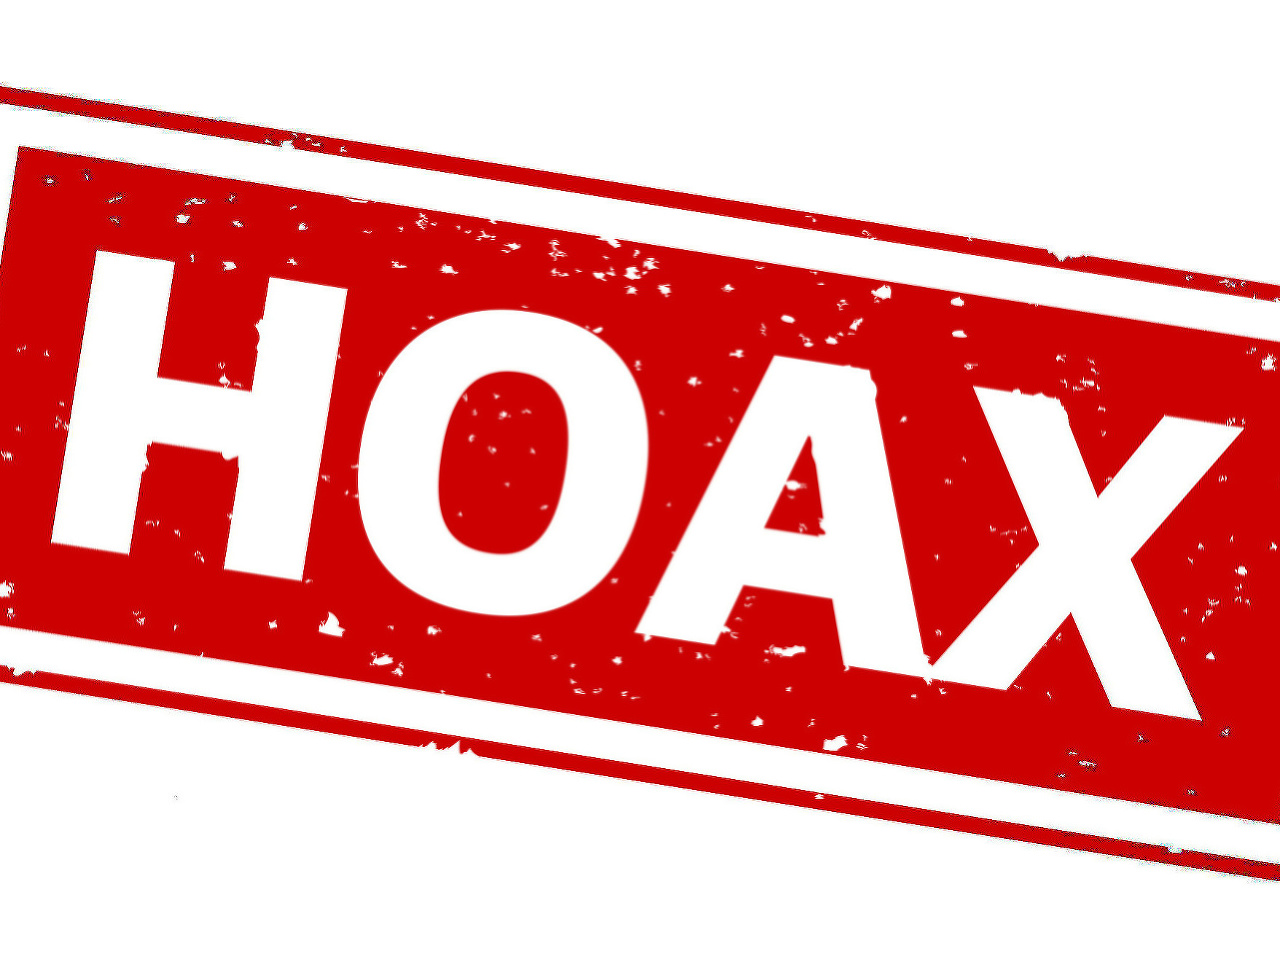 Internetom sa šíri ďalší hoax spojený s koronavírusom